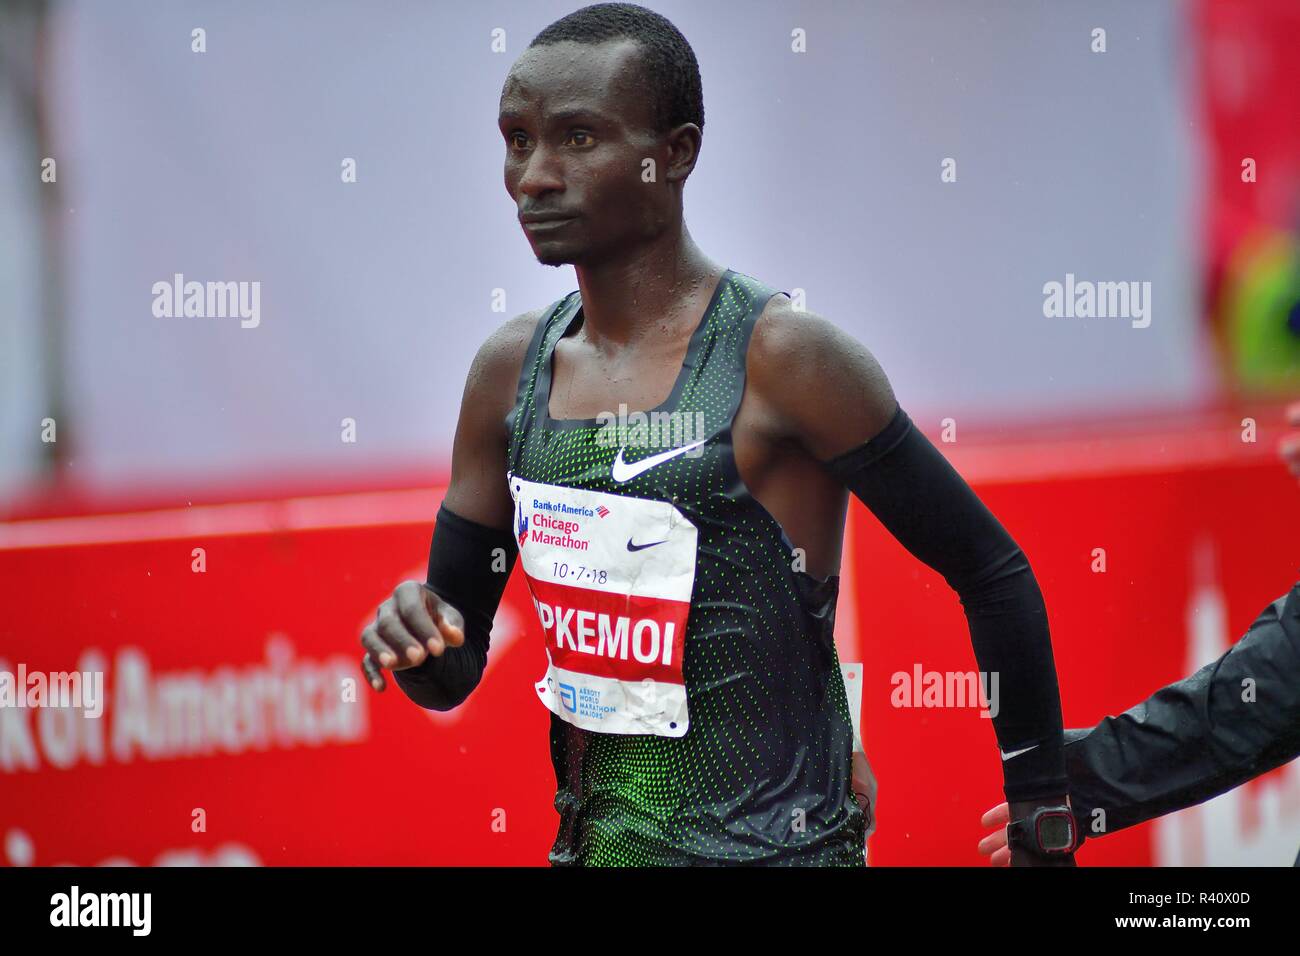 Chicago, Illinois, USA. Kenneth Kipkemoi Kenias an der Ziellinie nach seinem vierten Platz im Chicago Marathon 2018. Stockfoto